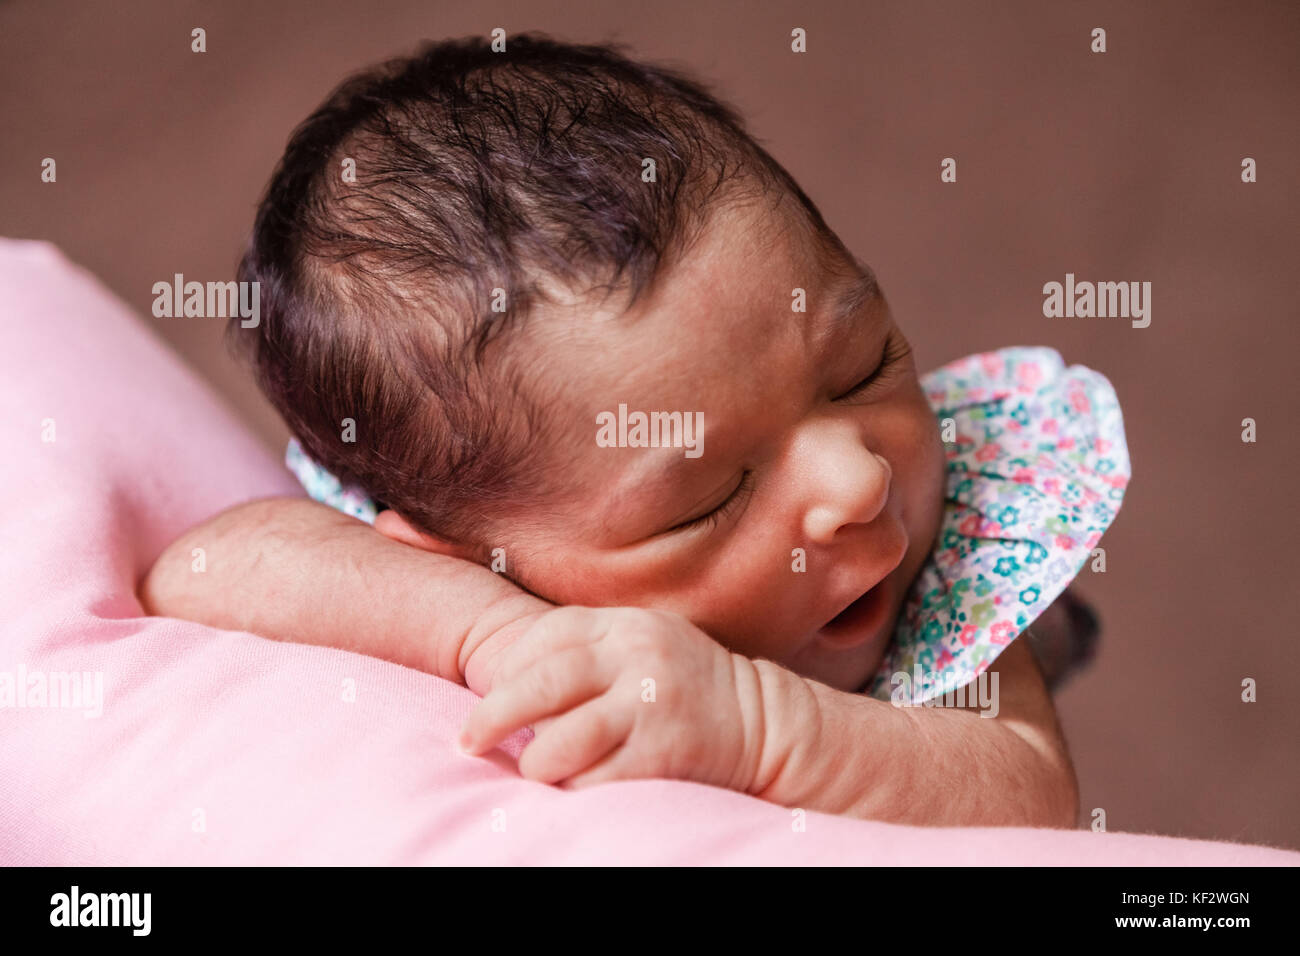 Close up portrait of a cute deux semaines Naissance bebe Fille portant une robe à fleurs, dormir paisiblement sur un oreiller / nouveau-né portrait mignon Banque D'Images